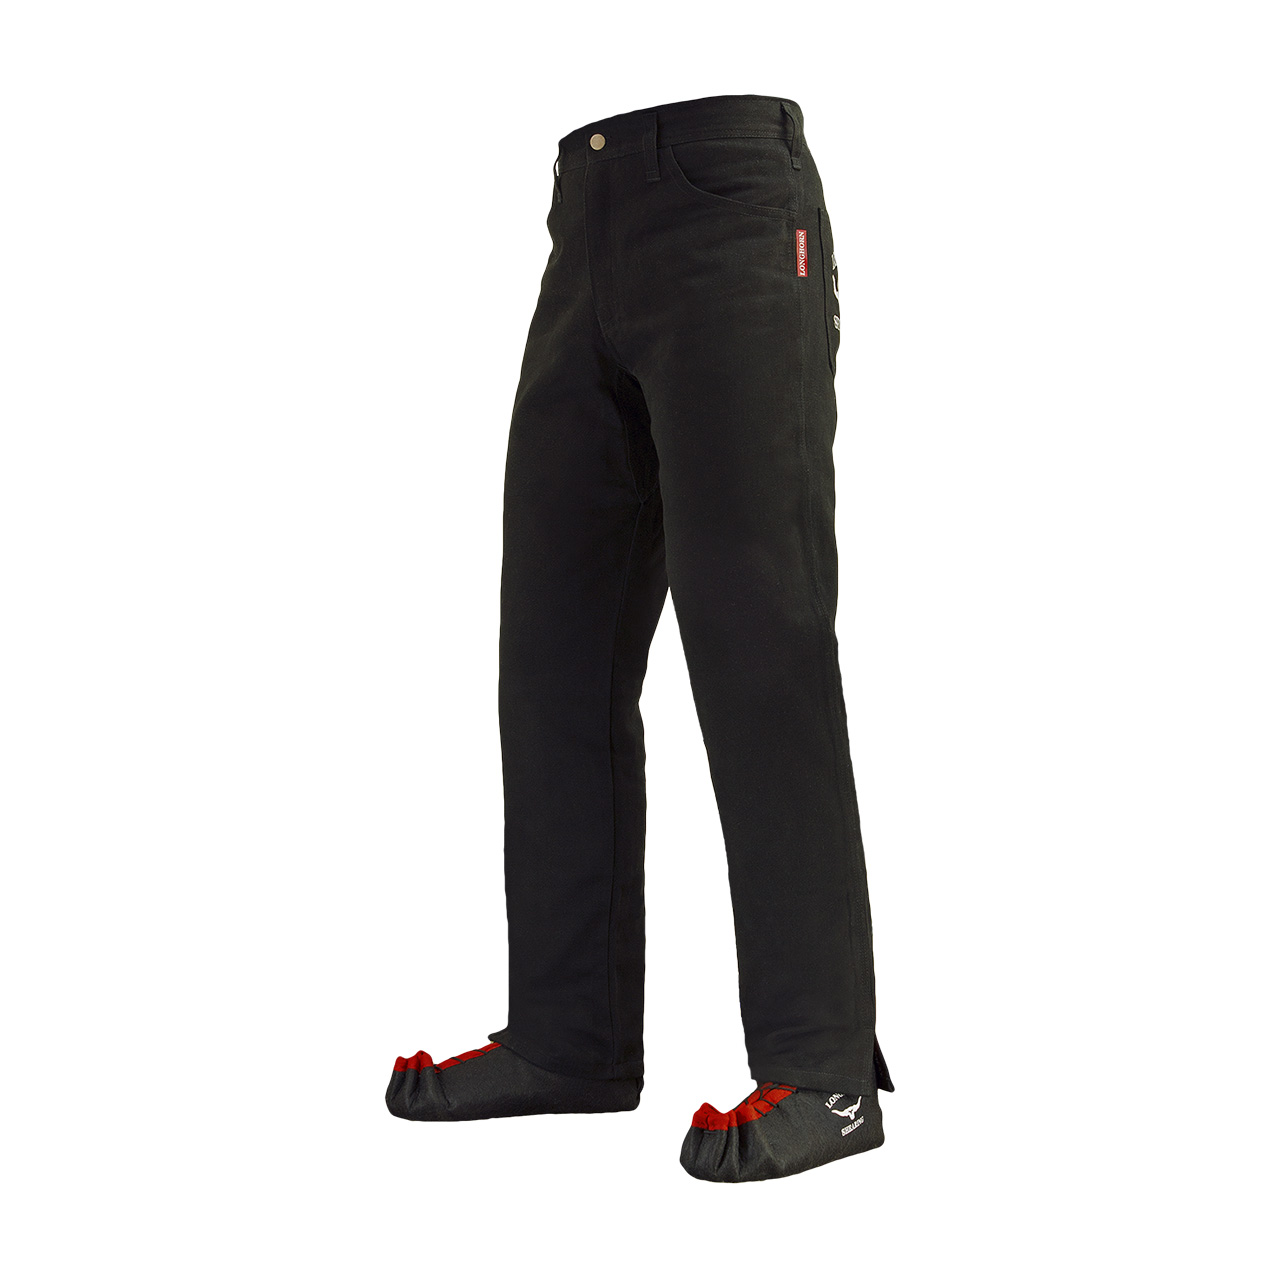 Longhorn™ kalhoty pro střihače ovcí s 2 předními kapsami velikost Regular 32/30 R4